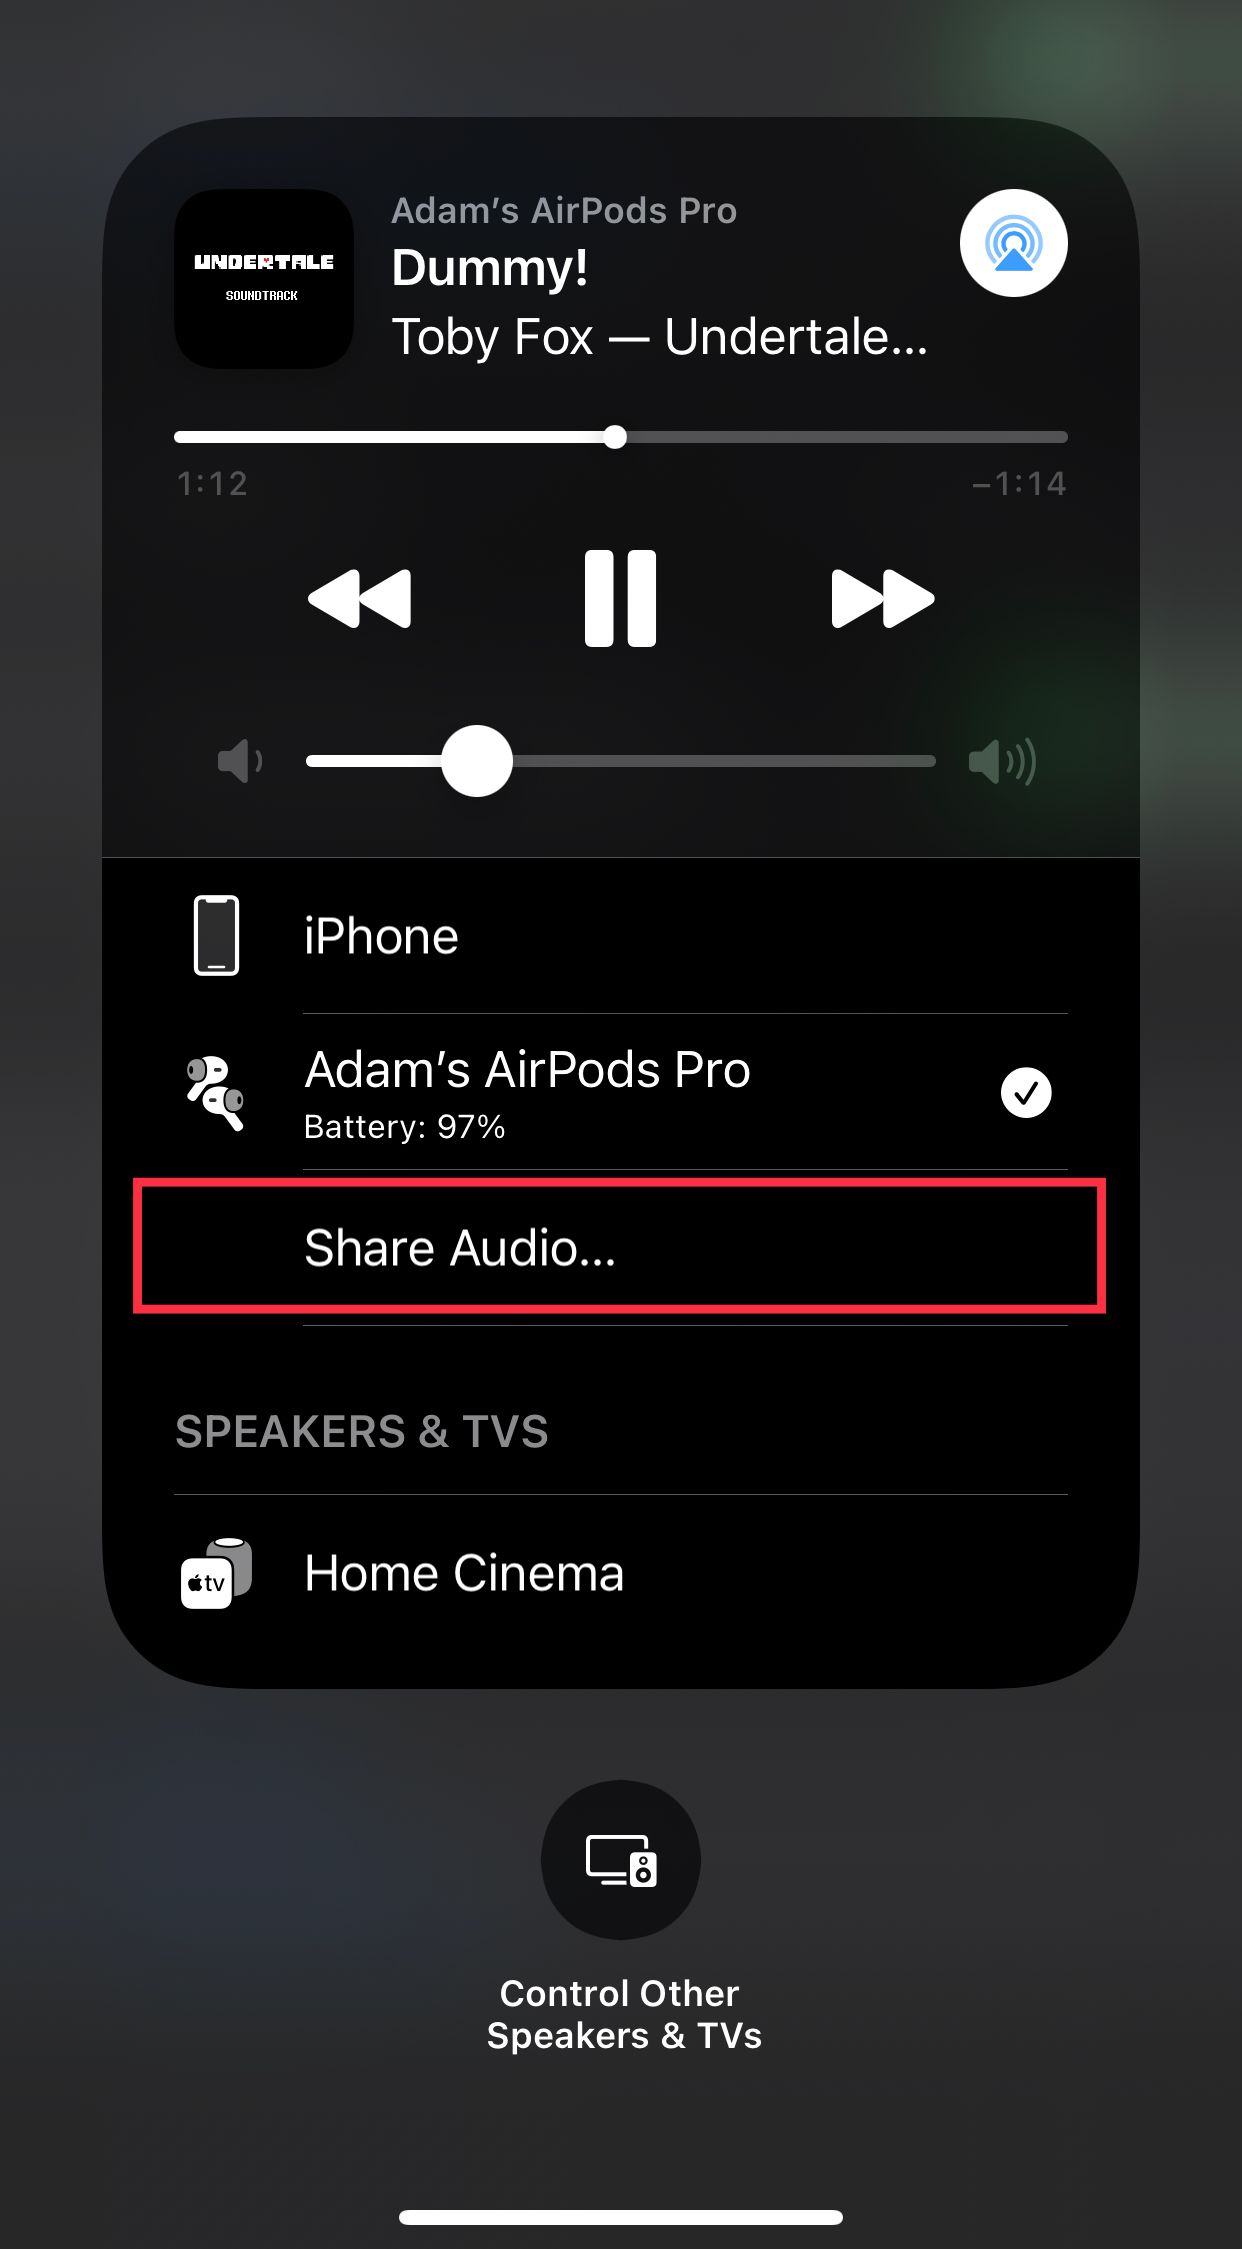 Share Audio via AirPods